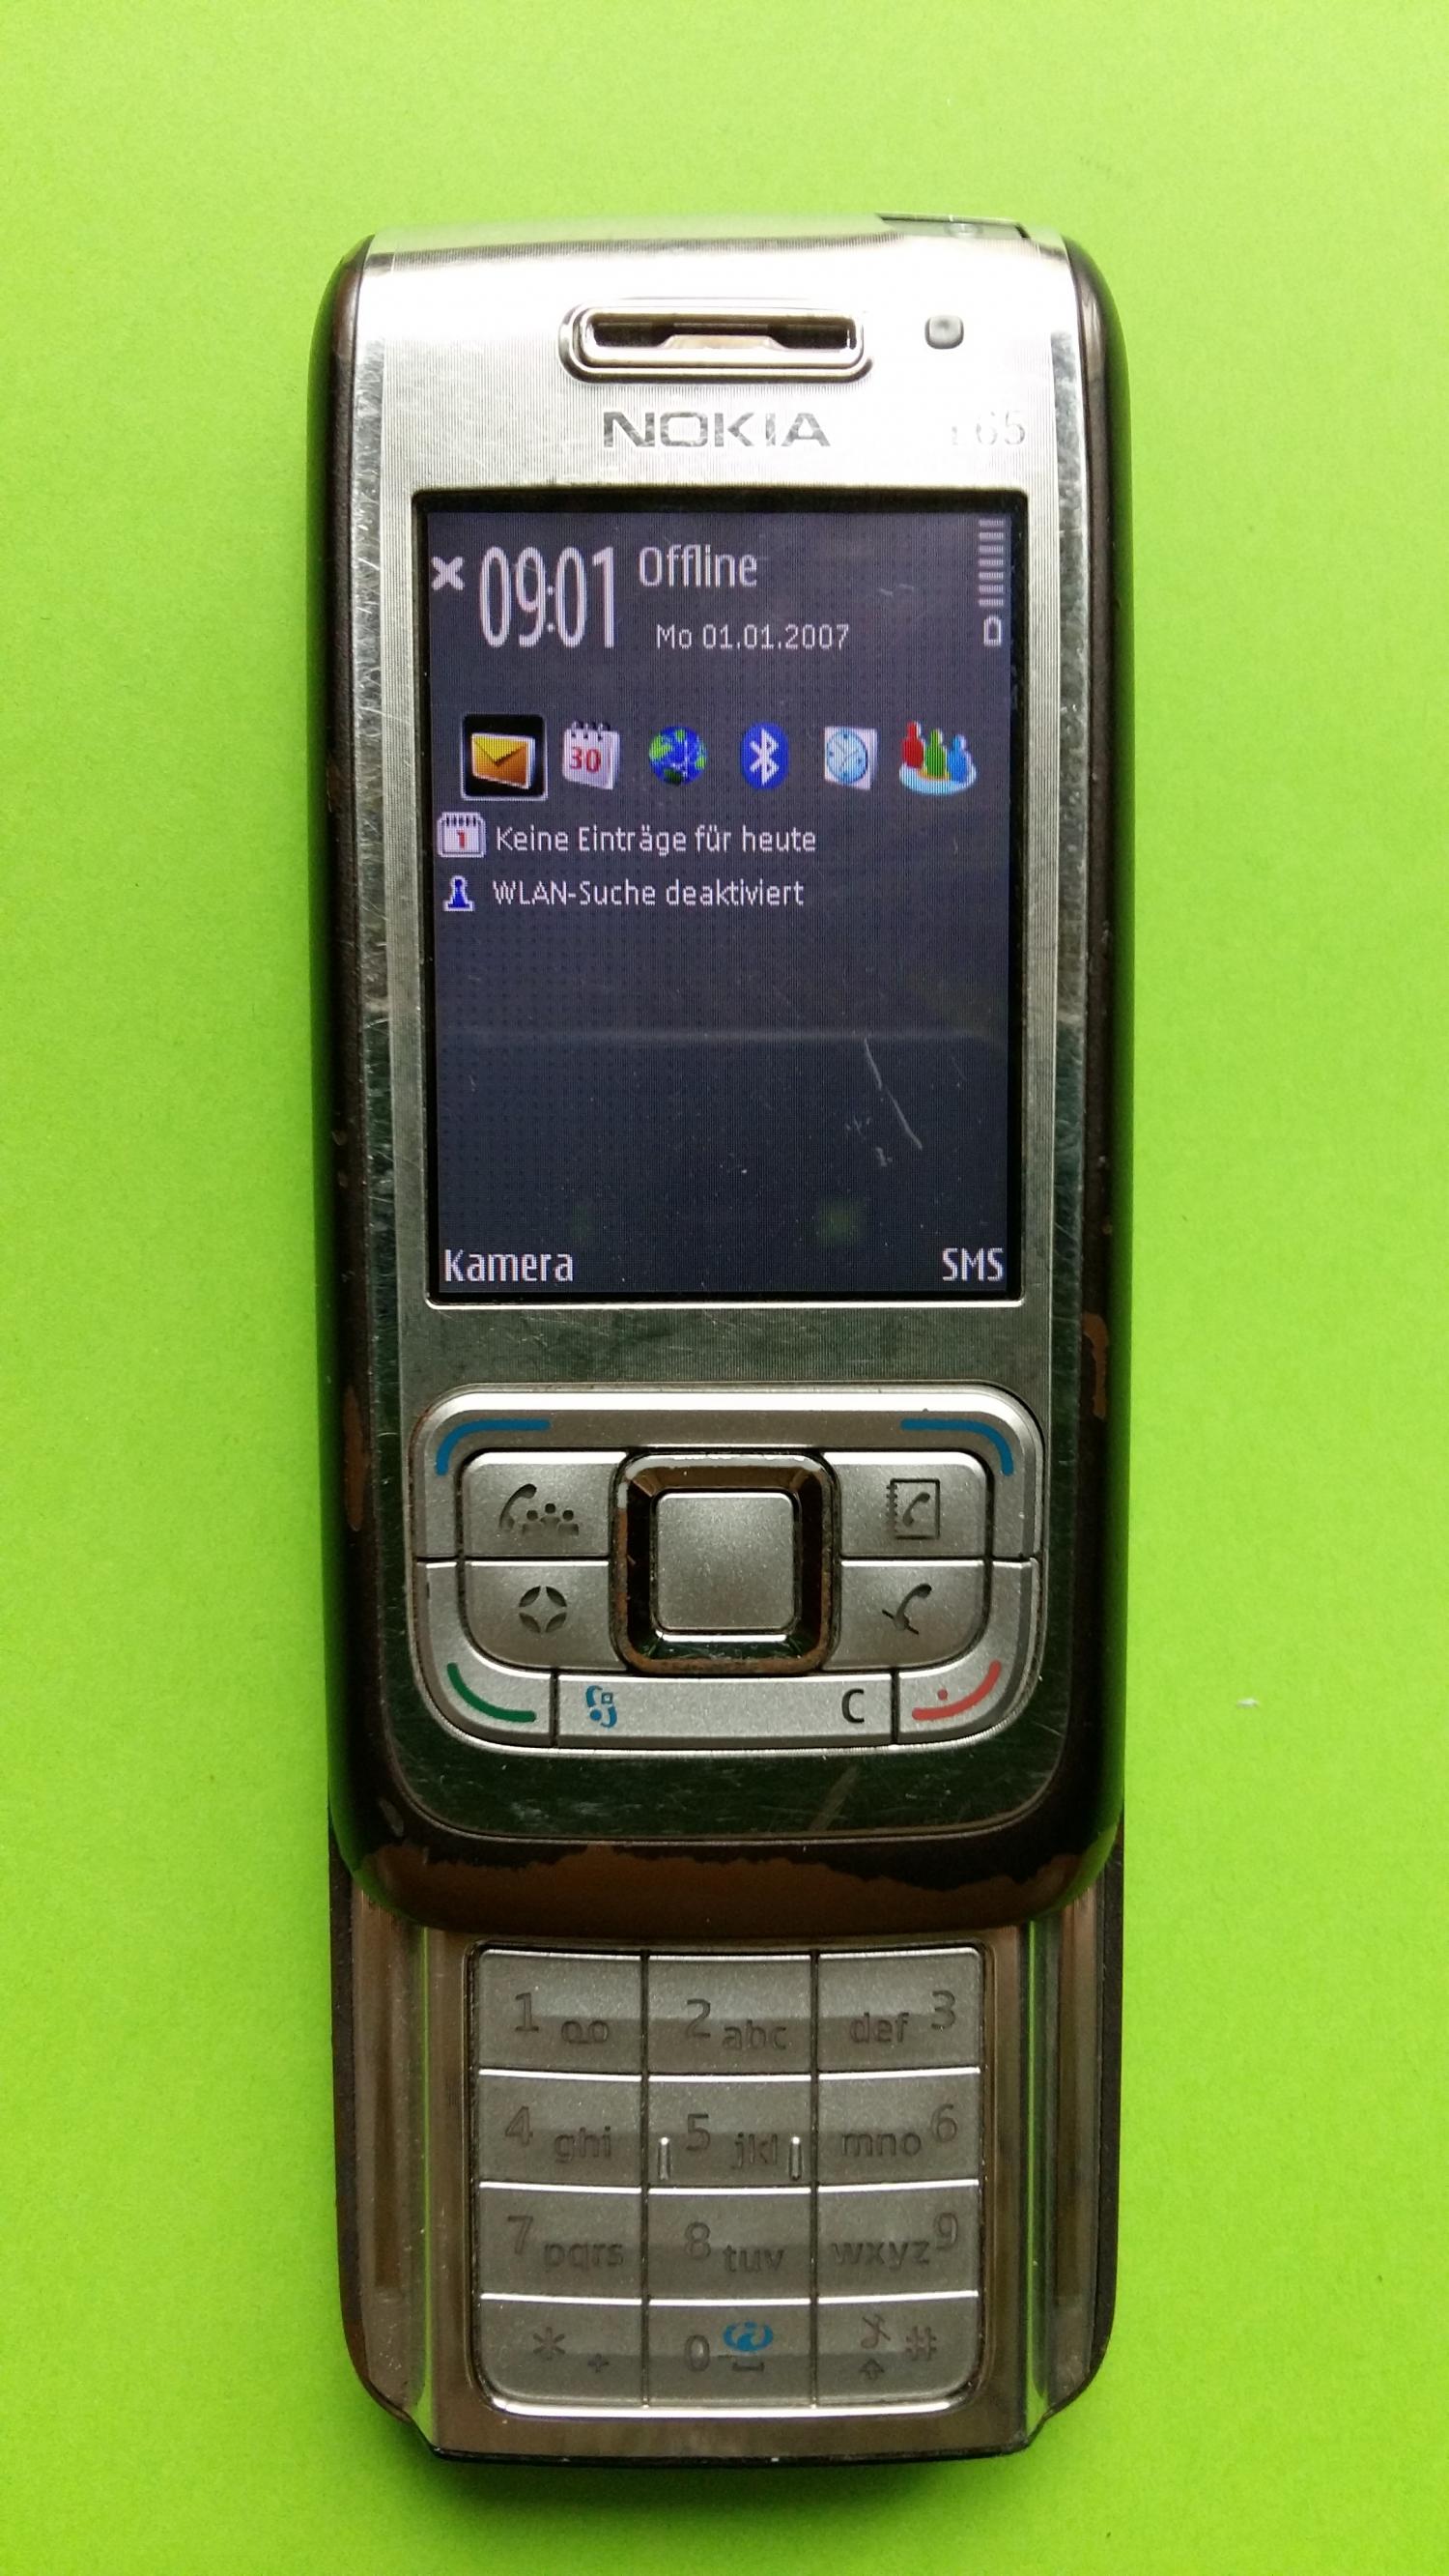 image-7312713-Nokia E65-1 (1)2.jpg